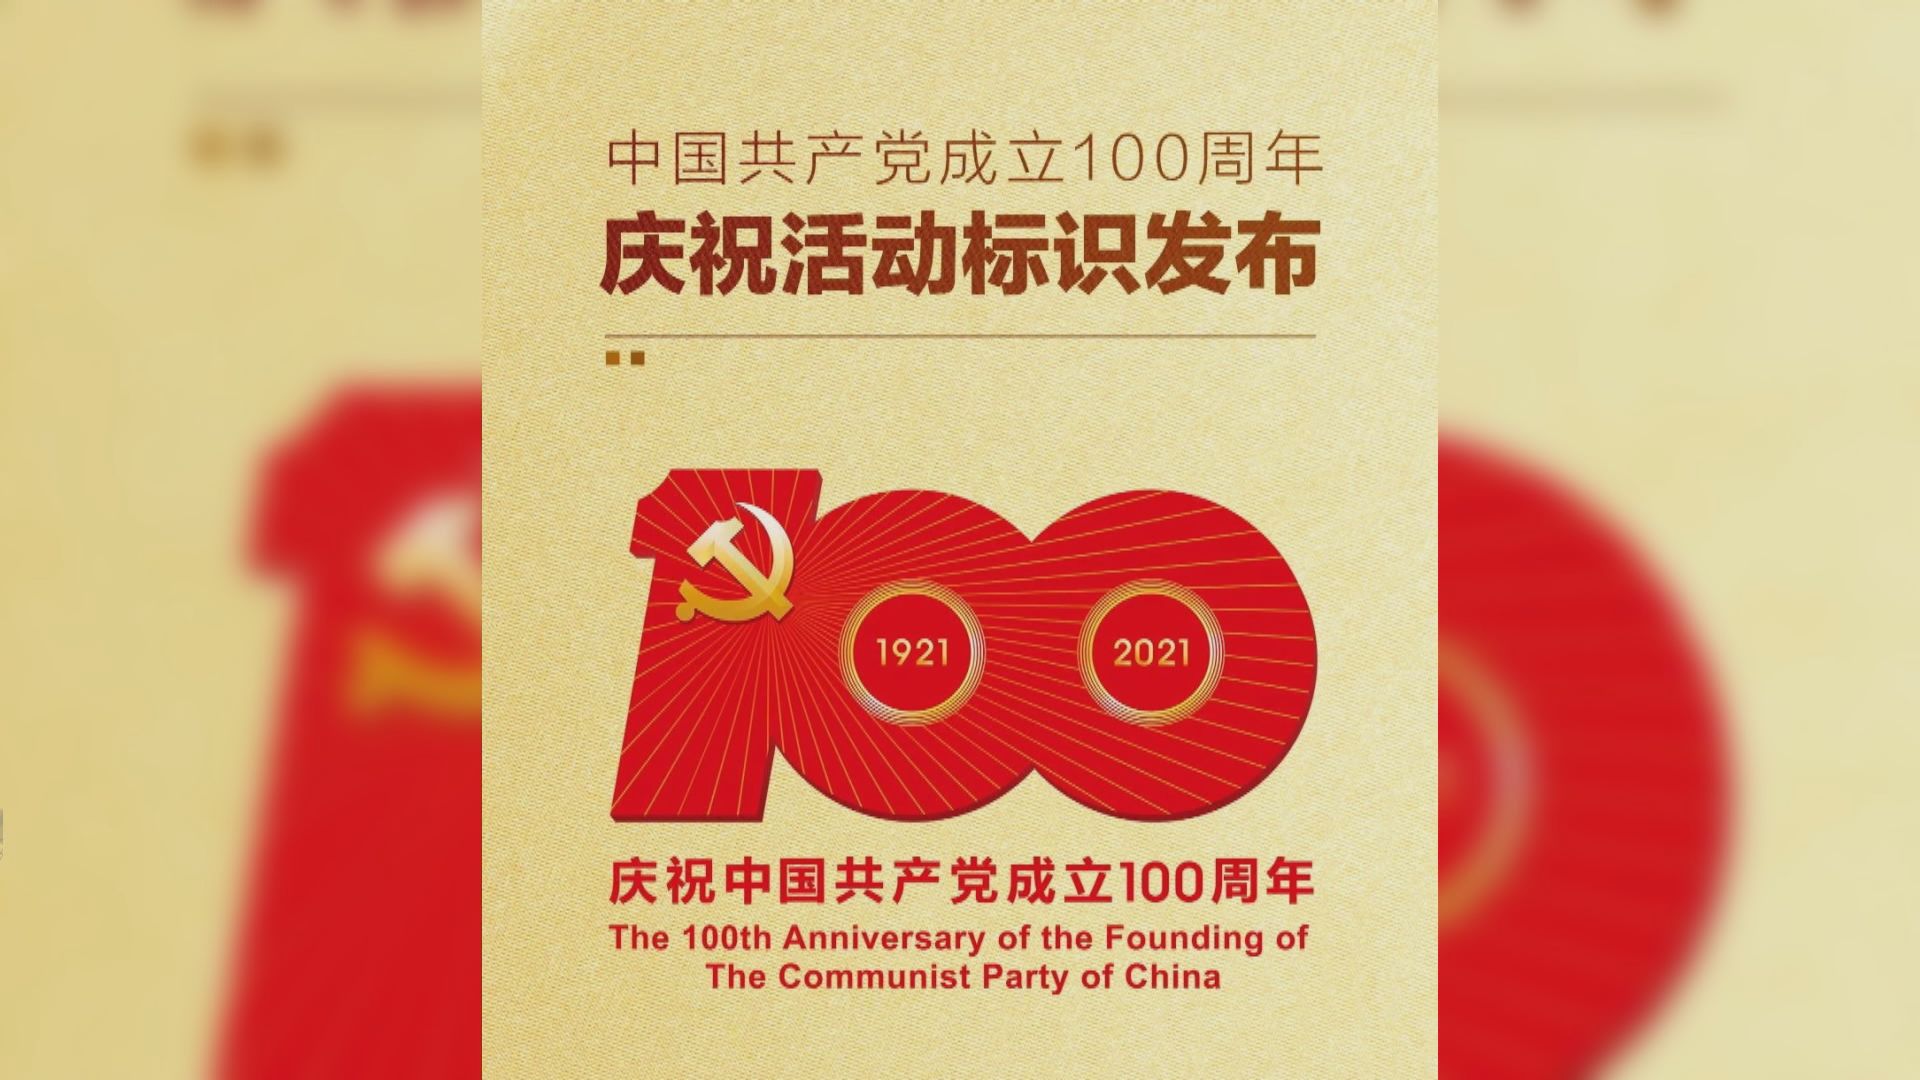 官方公布中共建黨一百周年慶祝活動標誌